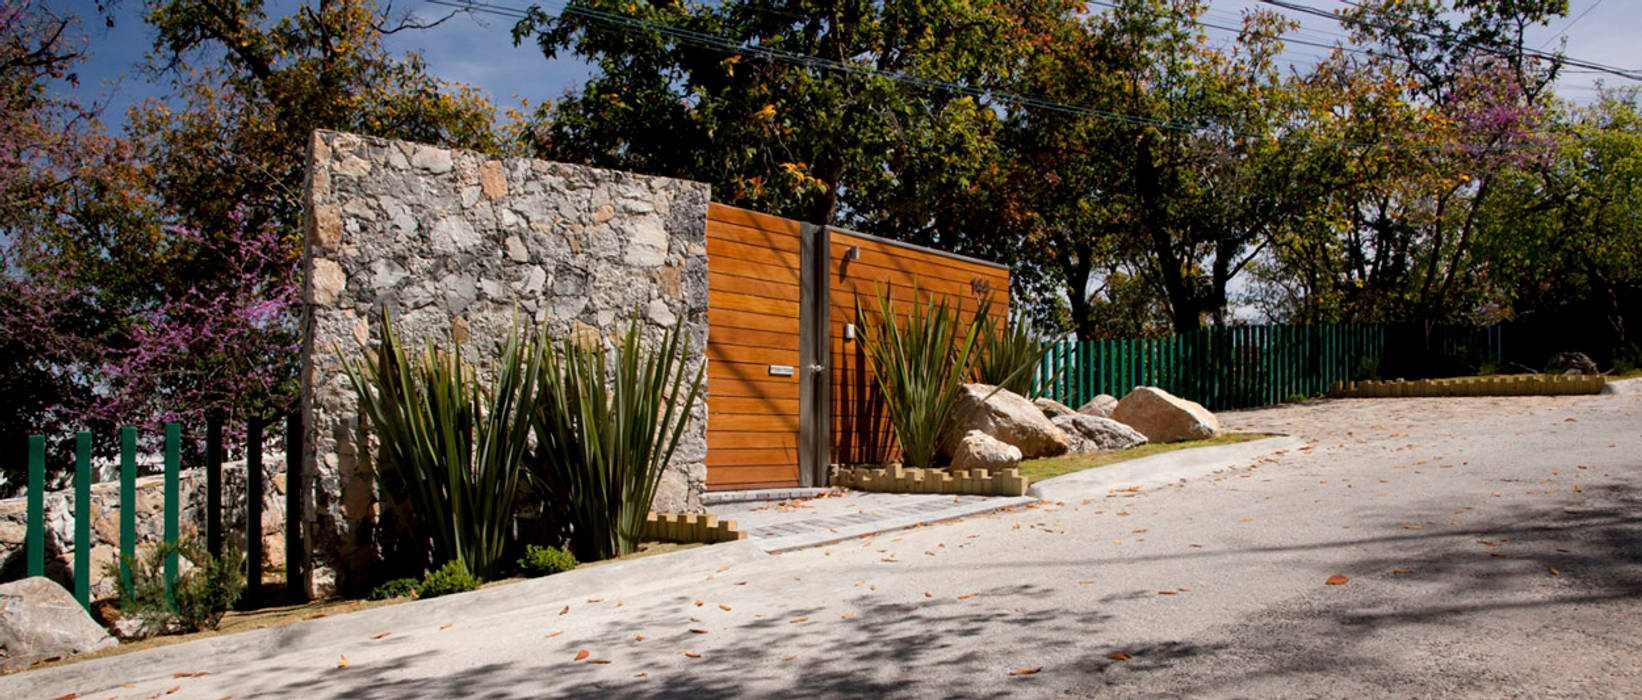 Casa Olinala - Local 10 Arquitectura Local 10 Arquitectura Casas modernas Concreto color,diseño,estilo,México,residencial